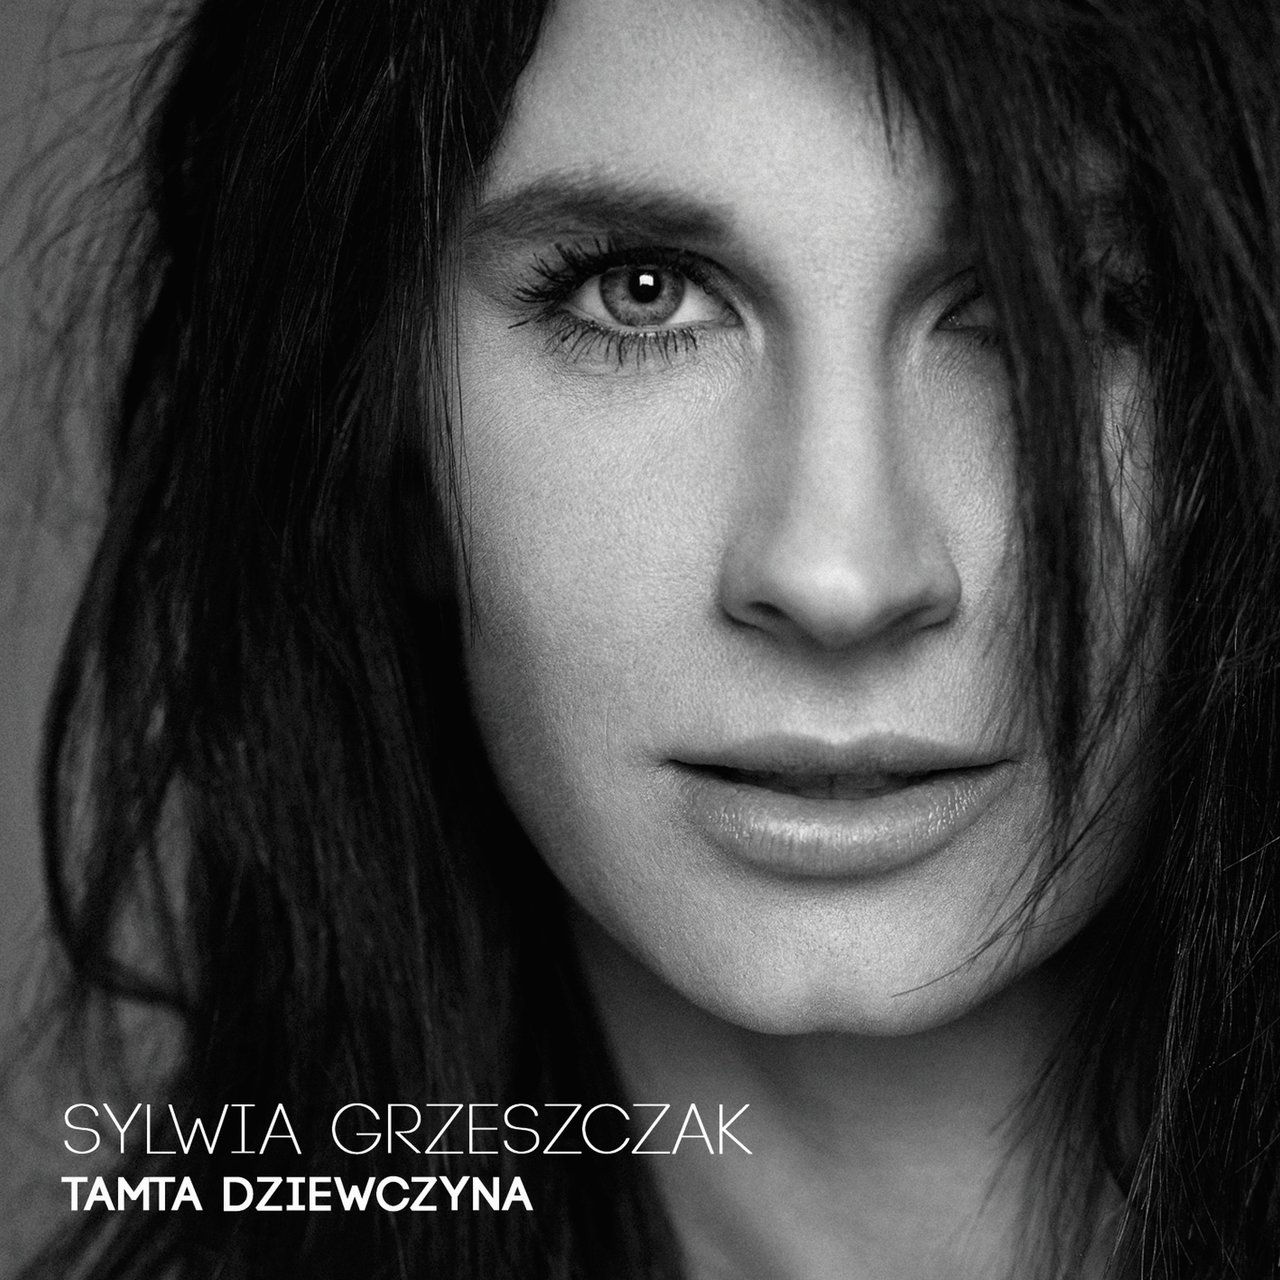 Sylwia Grzeszczak Tamta dziewczyna cover artwork